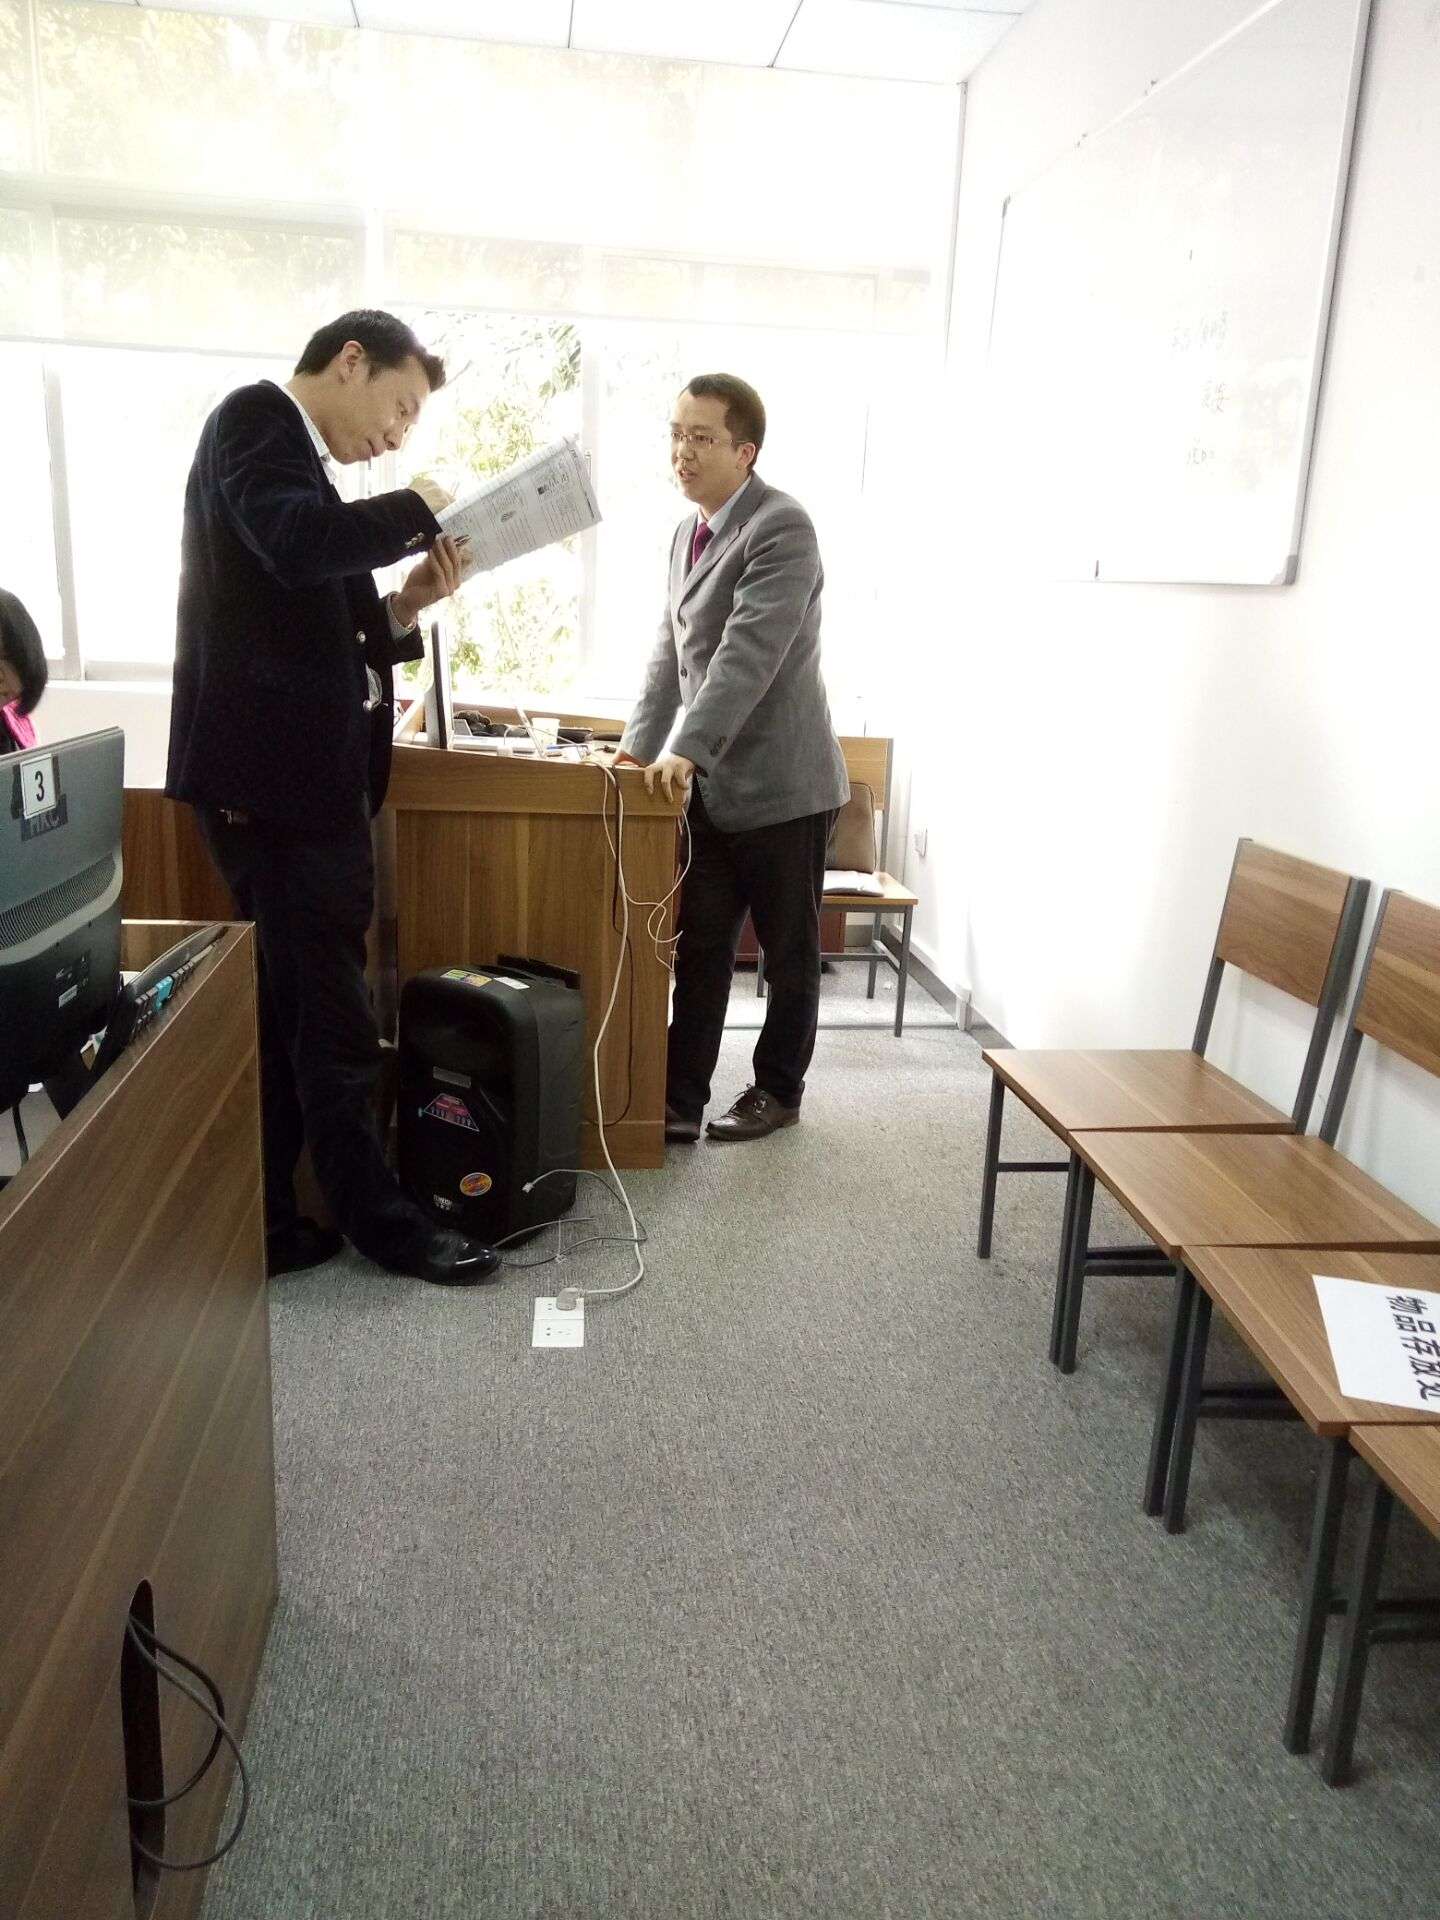 广州方普企业管理顾问有限公司 老师探讨问题